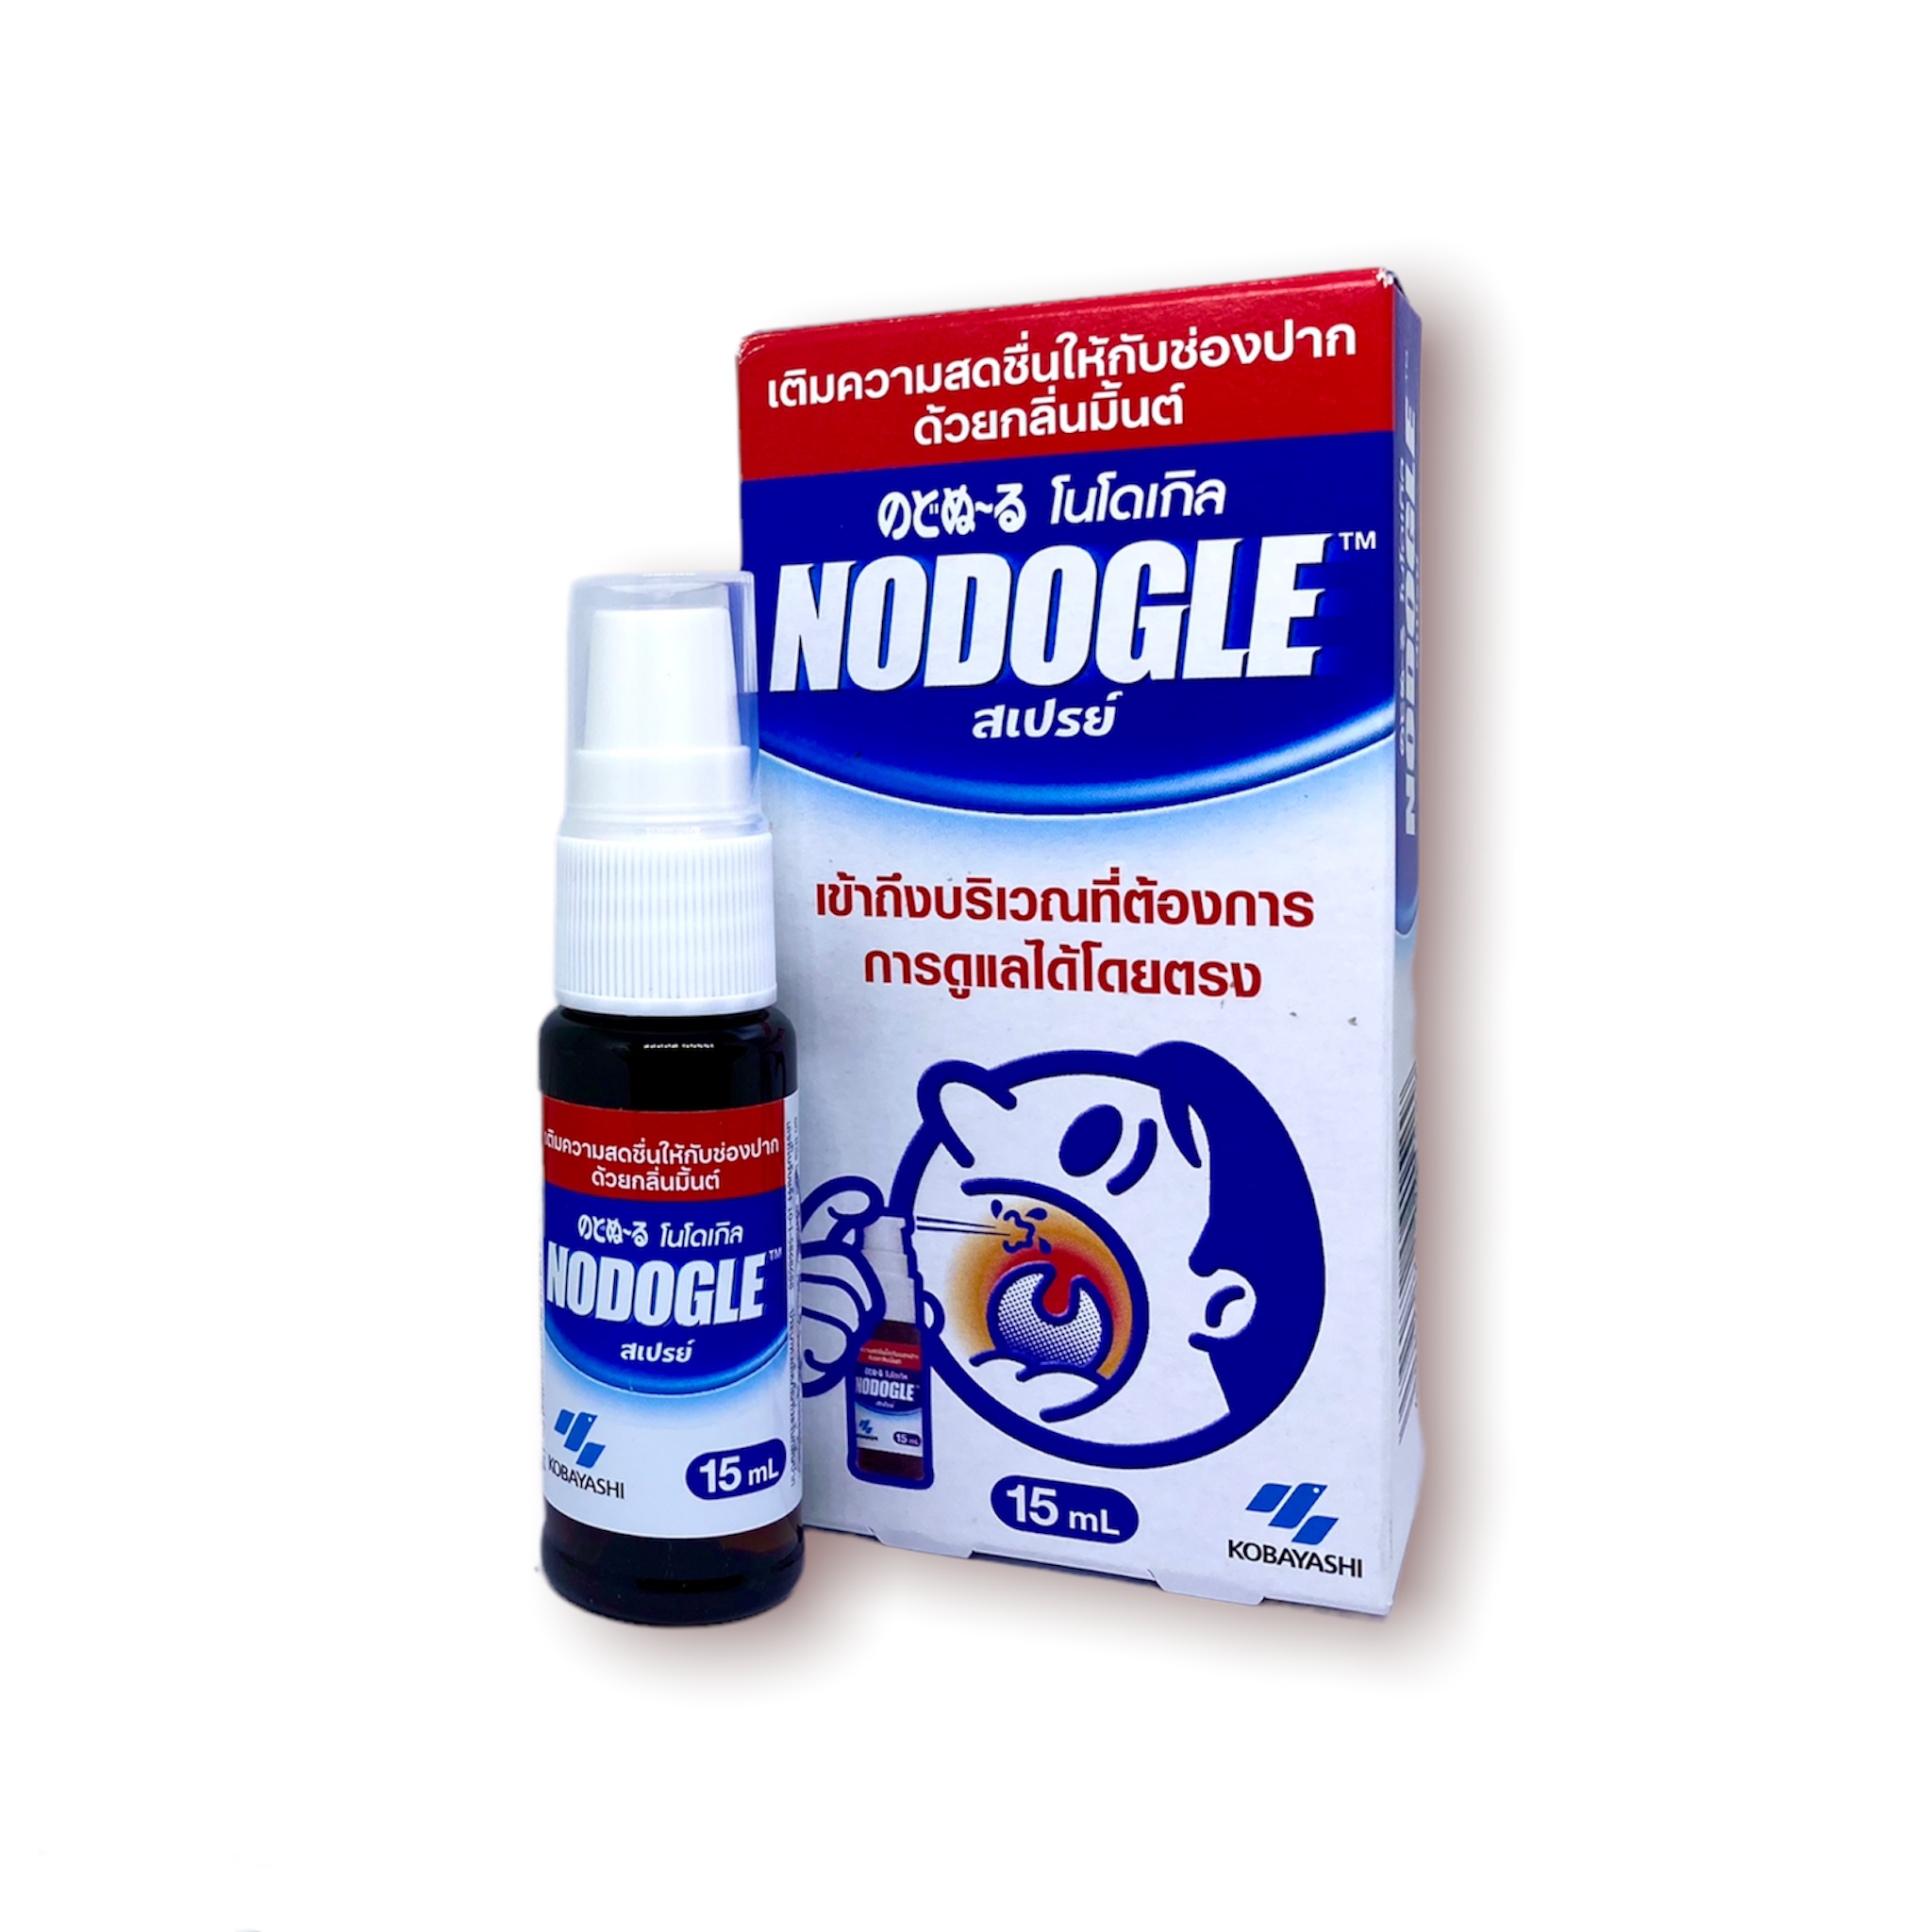 KOBAYASHI Nodogle Mouth Spray 15 ml., Спрей для полости рта и горла 15 мл.